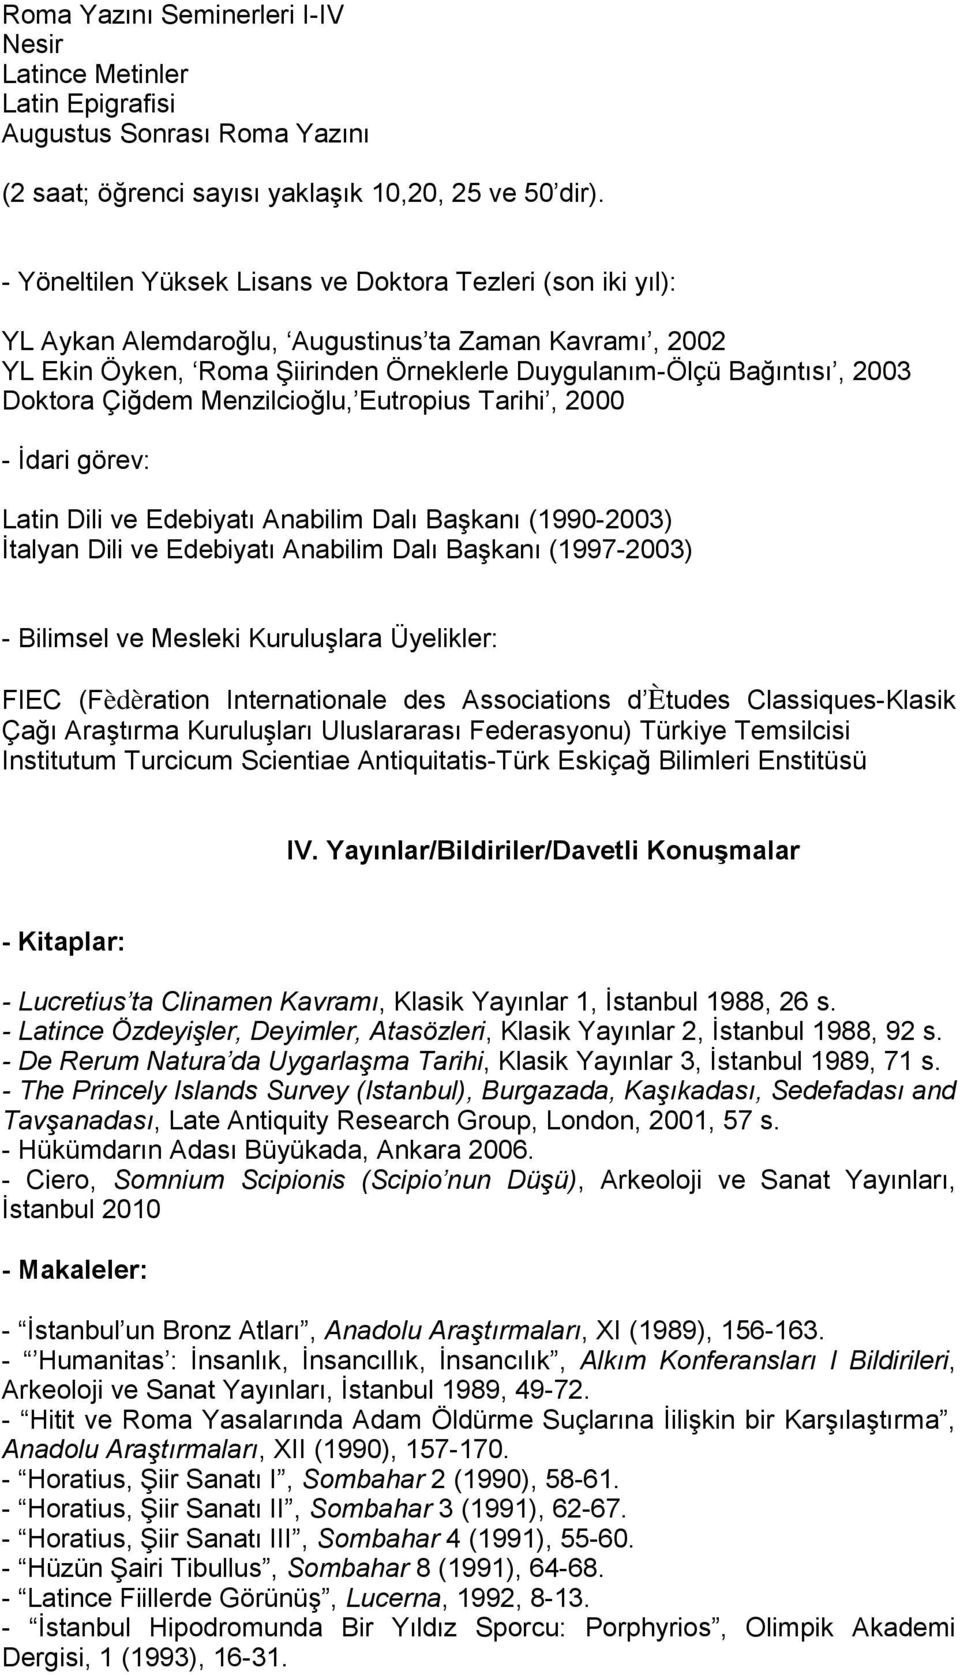 Çiğdem Menzilcioğlu, Eutropius Tarihi, 2000 - İdari görev: Latin Dili ve Edebiyatı Anabilim Dalı Başkanı (1990-2003) İtalyan Dili ve Edebiyatı Anabilim Dalı Başkanı (1997-2003) - Bilimsel ve Mesleki